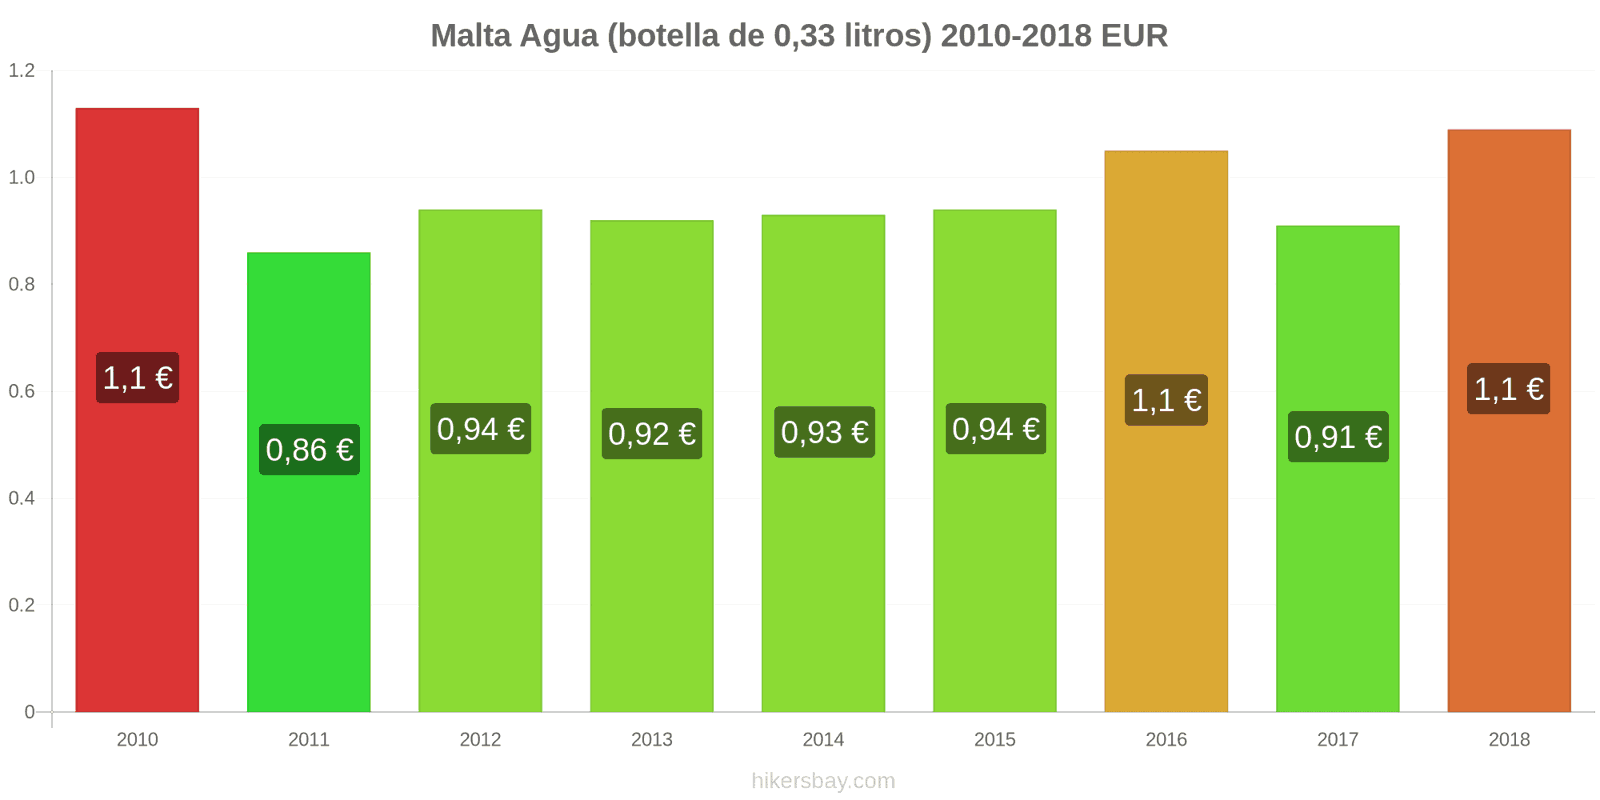 Malta cambios de precios Agua (botella de 0.33 litros) hikersbay.com